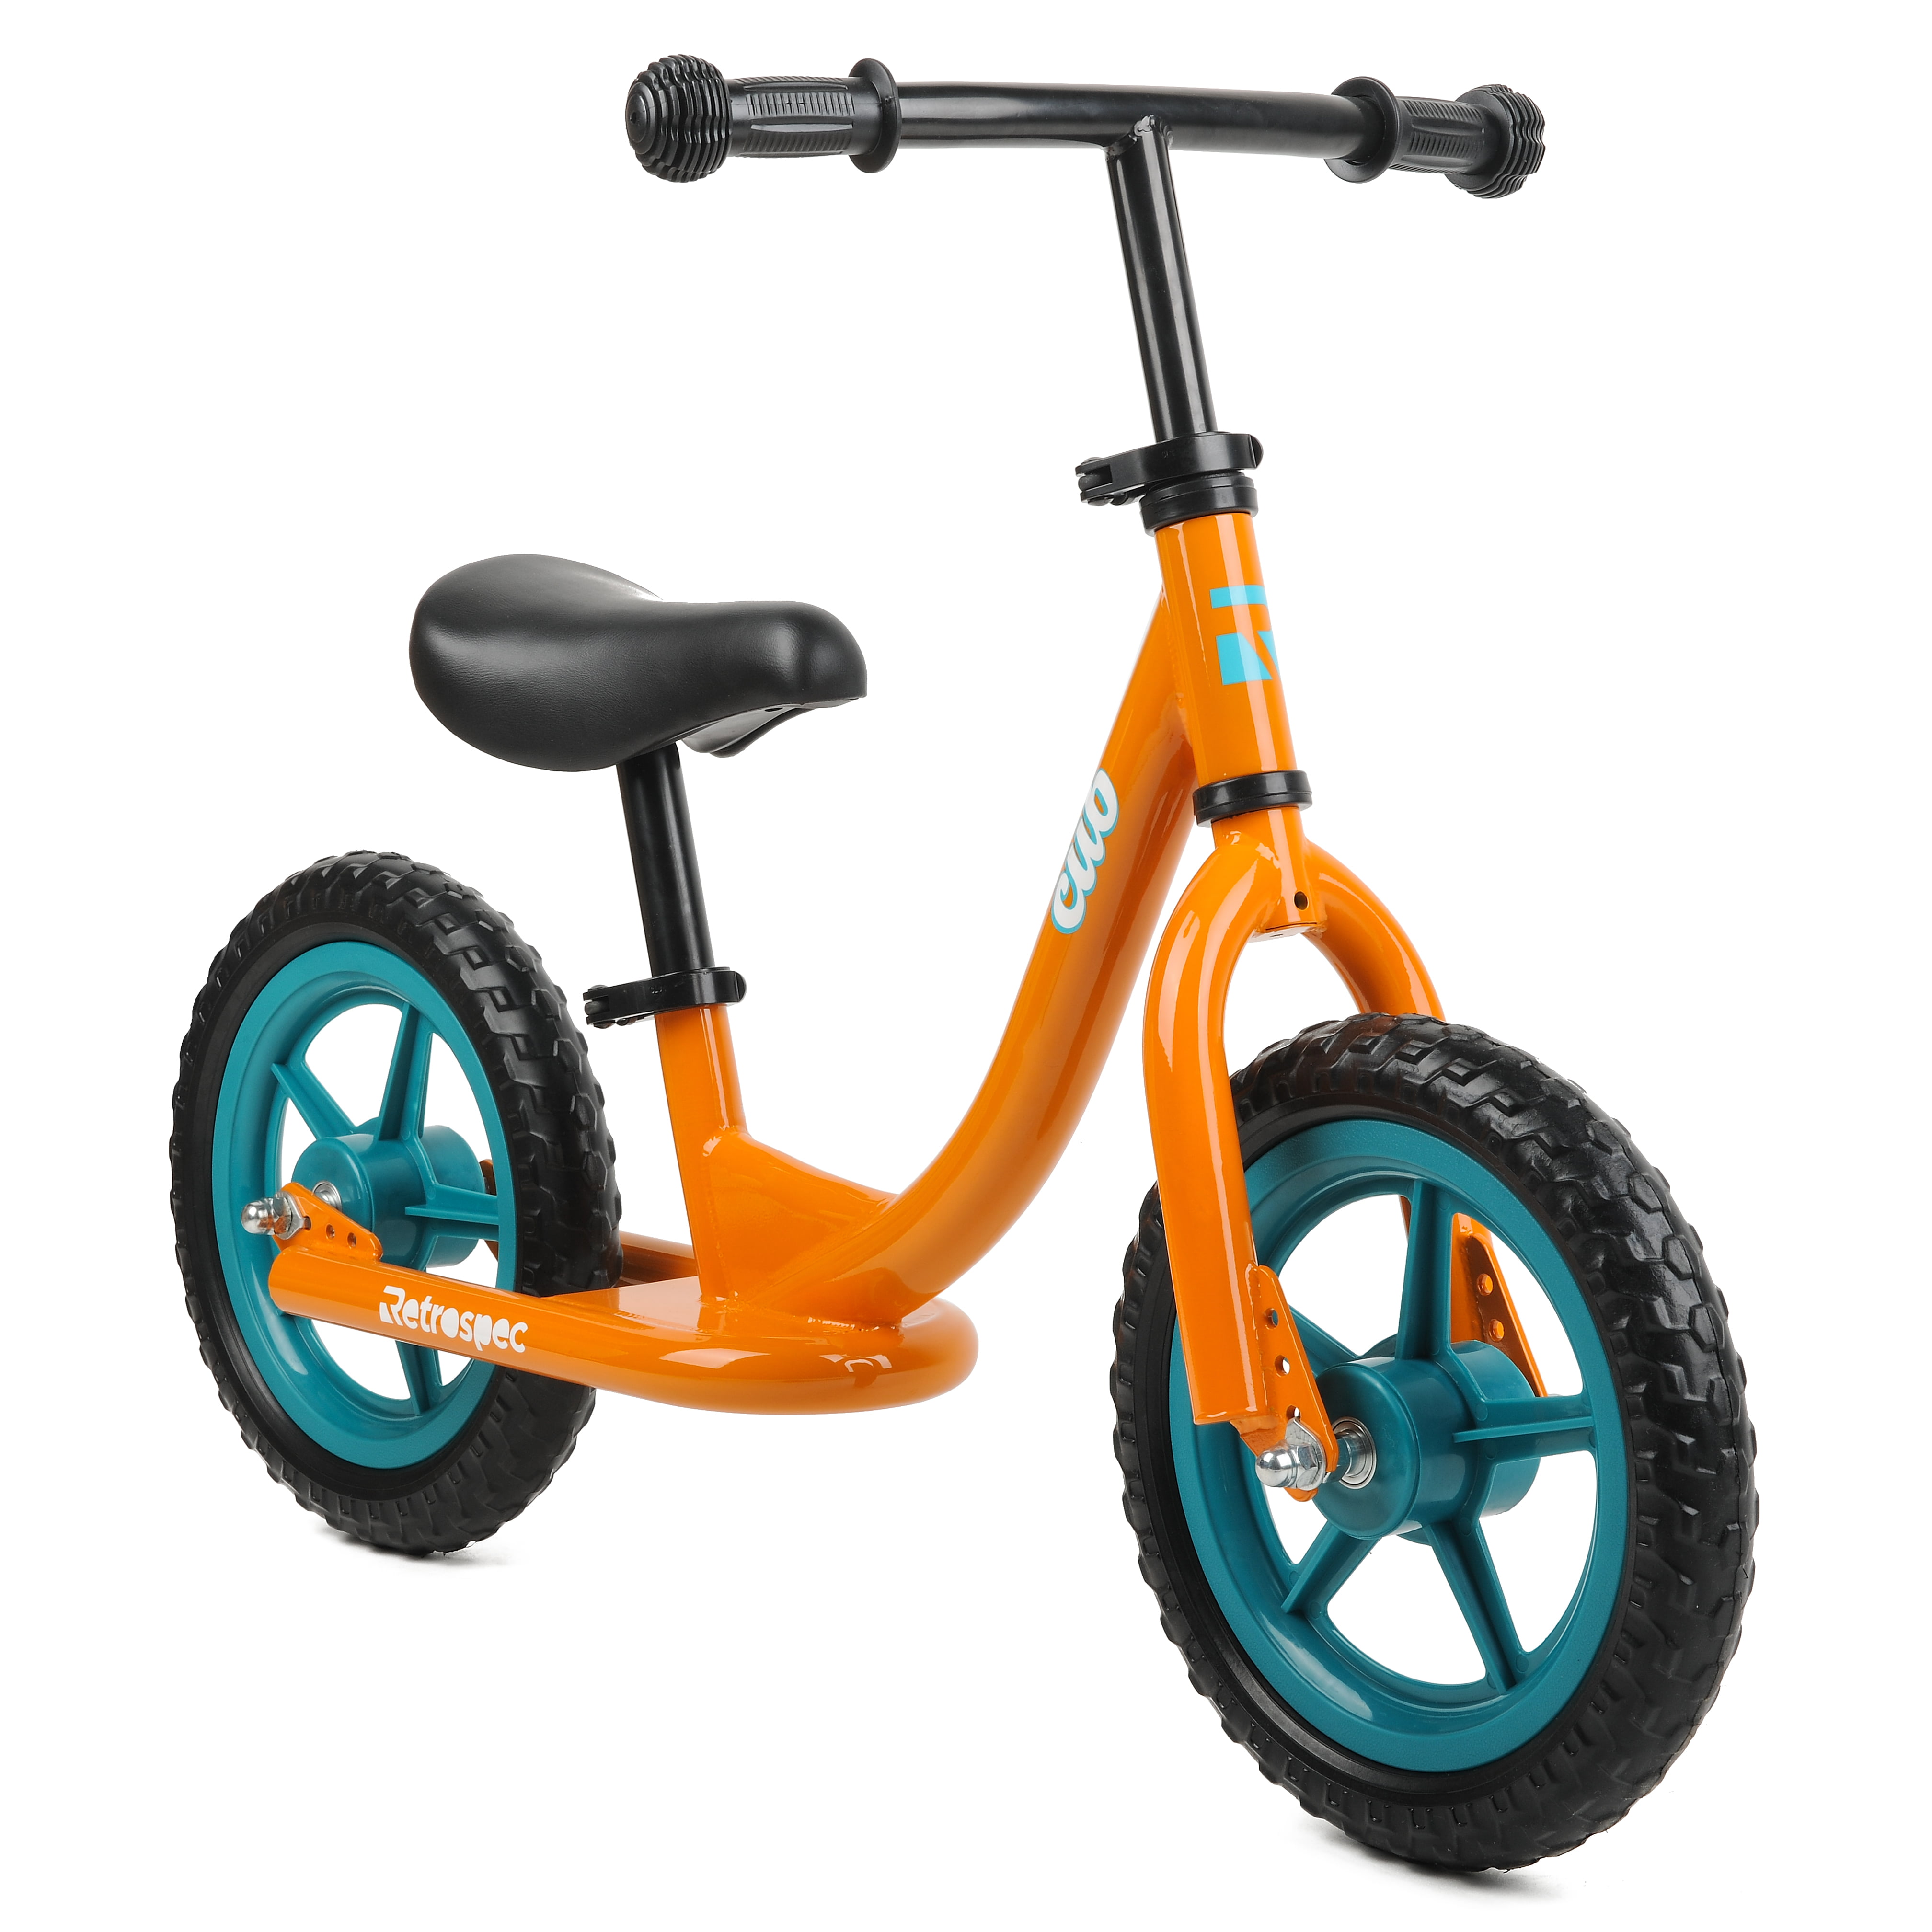 No Pedal Kid Toddler Balance Bike Bicycle Tricycle Beginner Training 4 Wheel US 